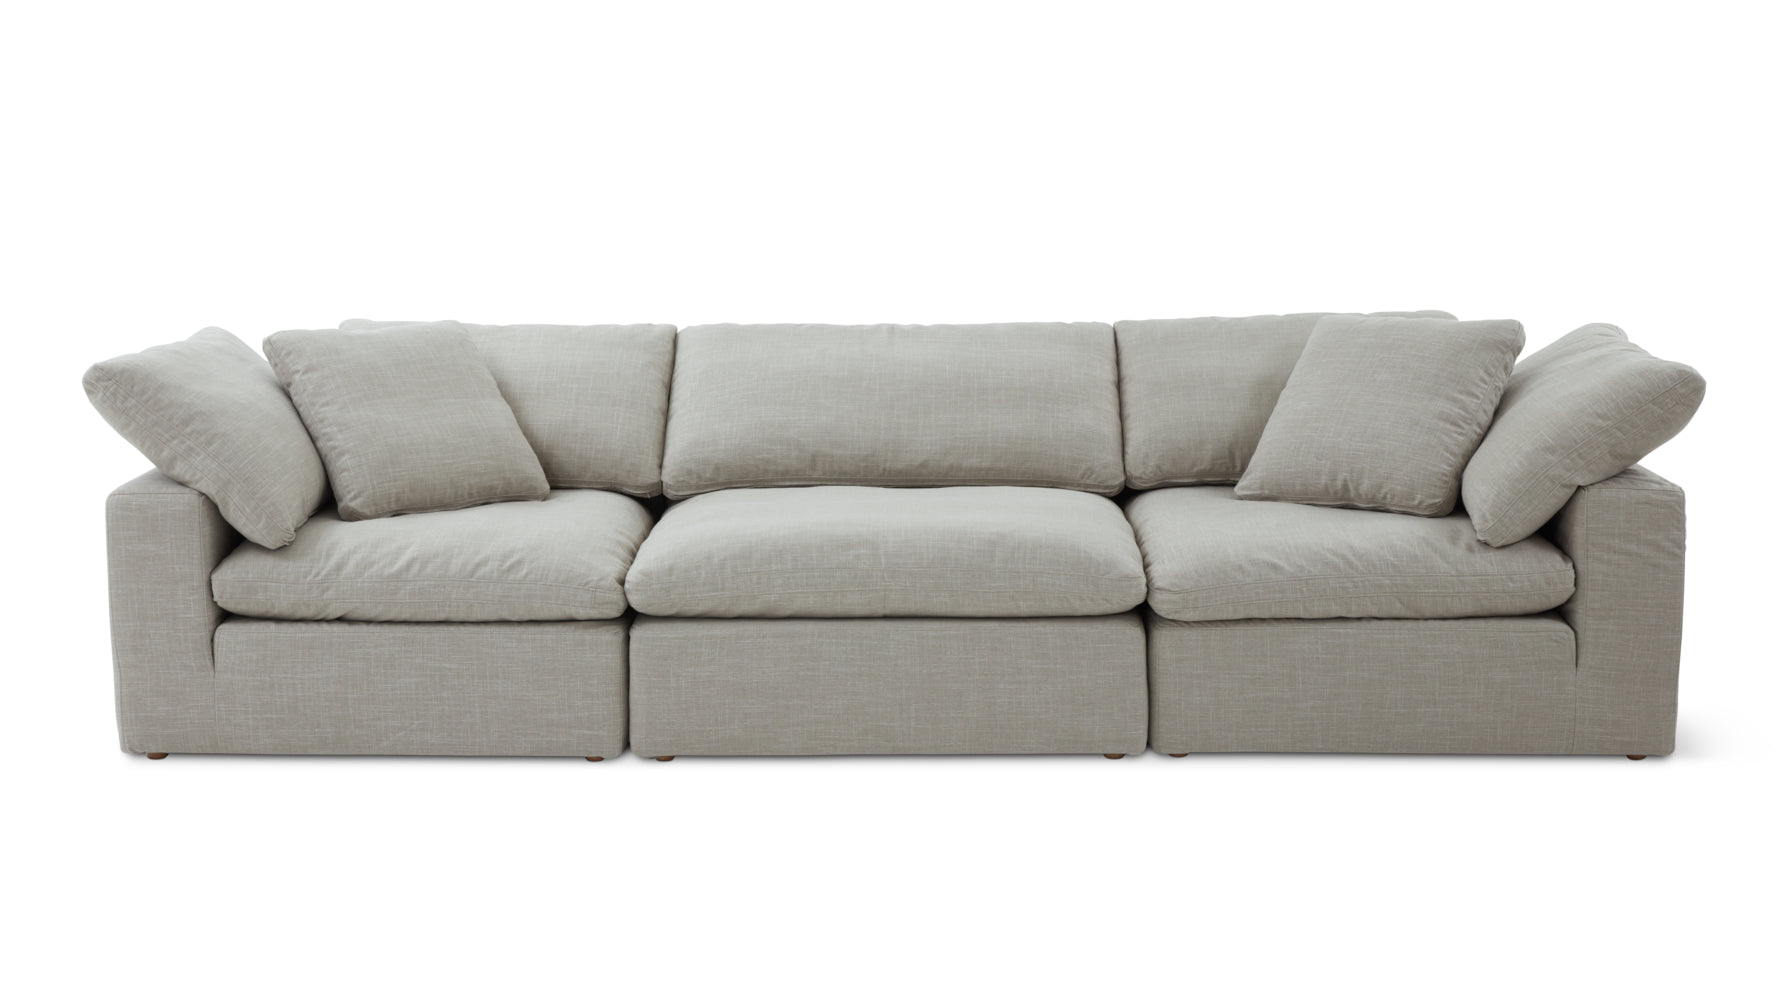 Movie Night™ 3-Piece Modular Sofa, Standard, Light Pebble - Image 1